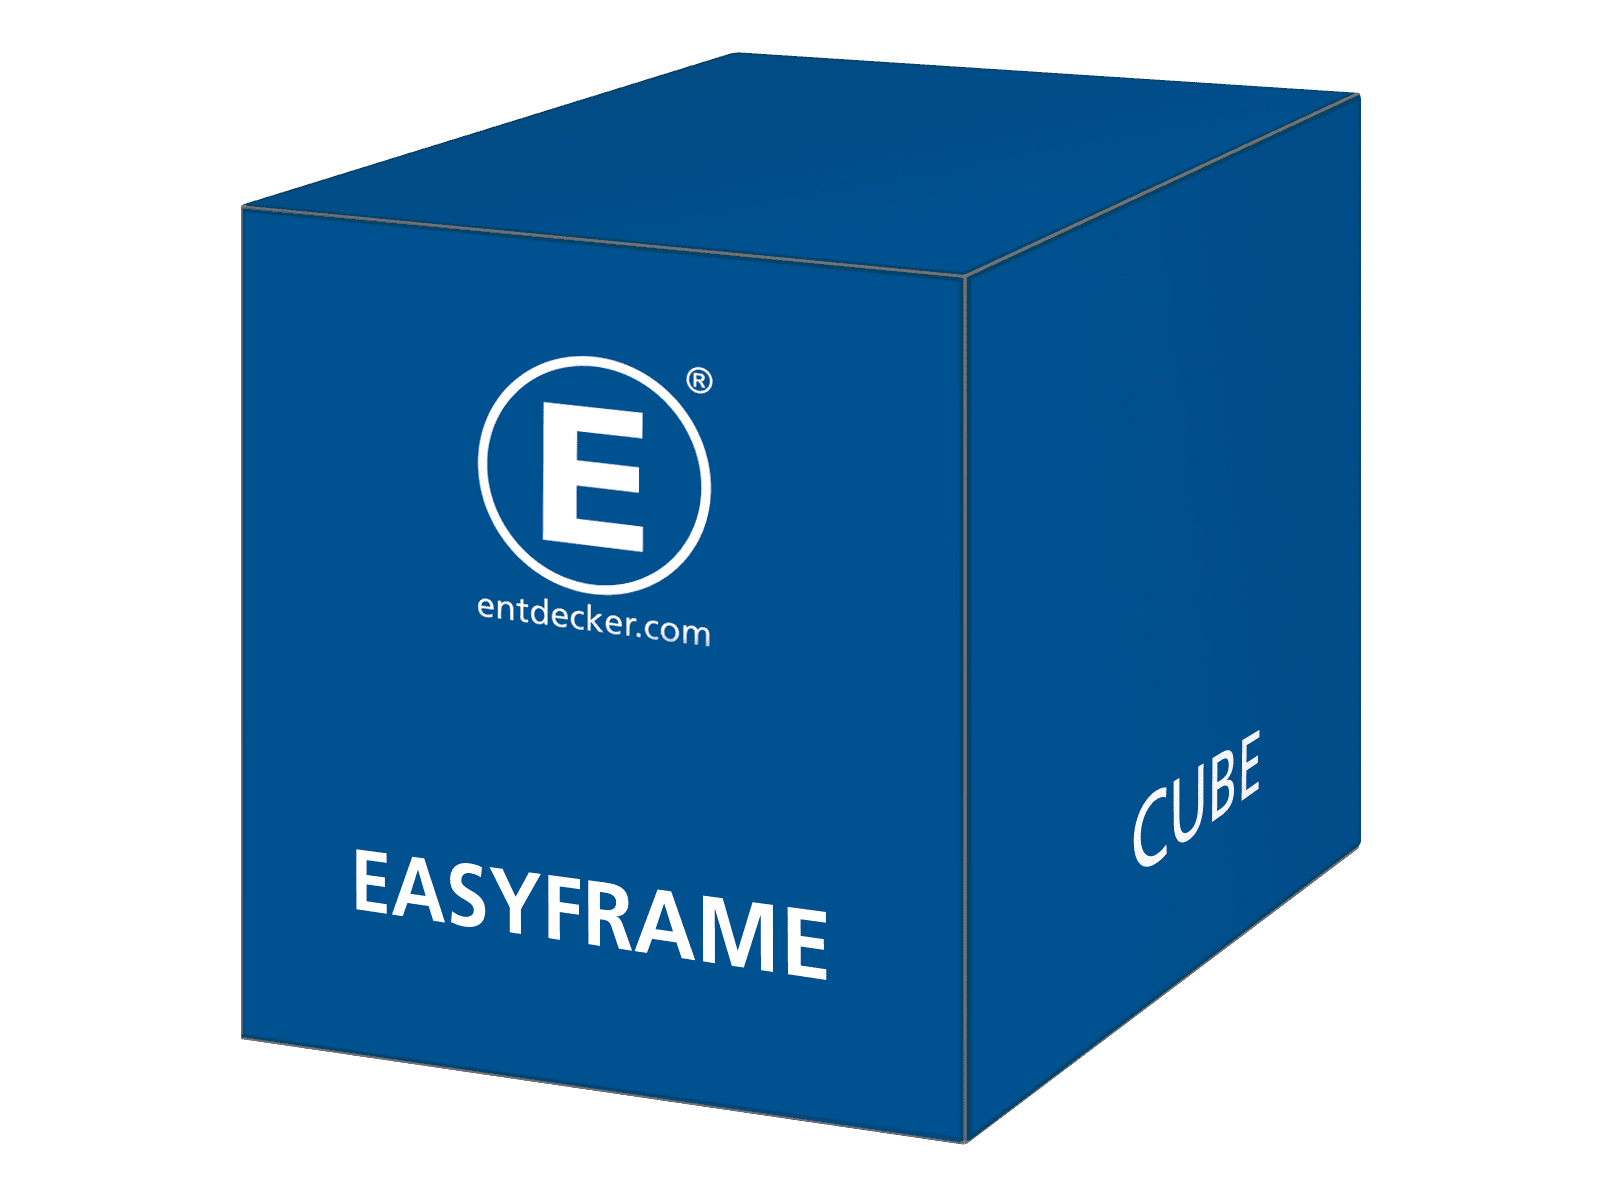 Messewand-Easyframe-CubeeyMmj5wknauO5